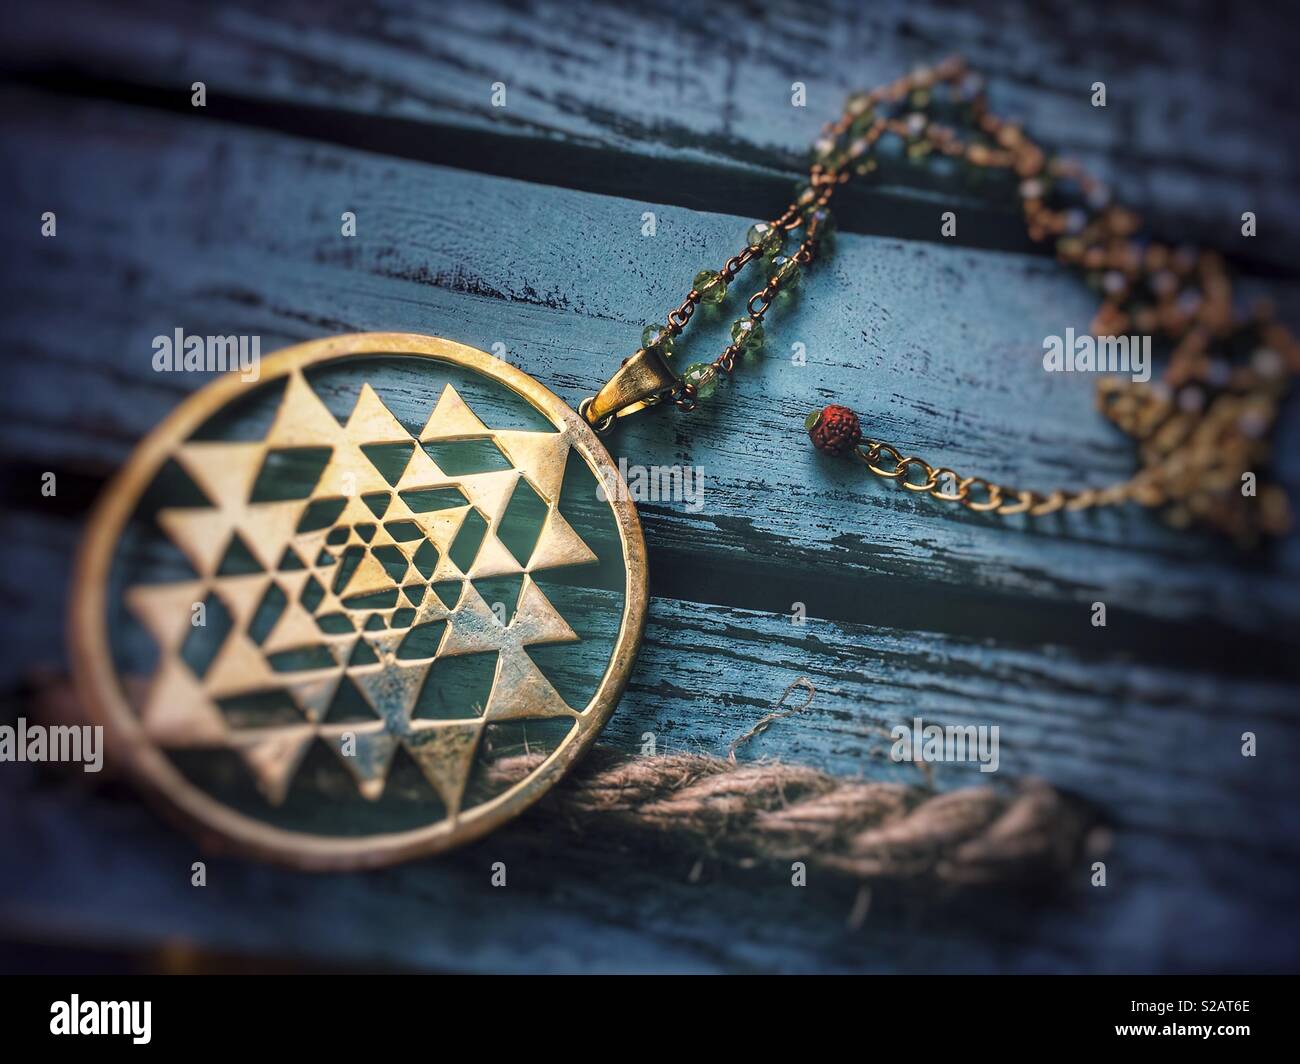 Sri yantra pendant necklace Stock Photo - Alamy